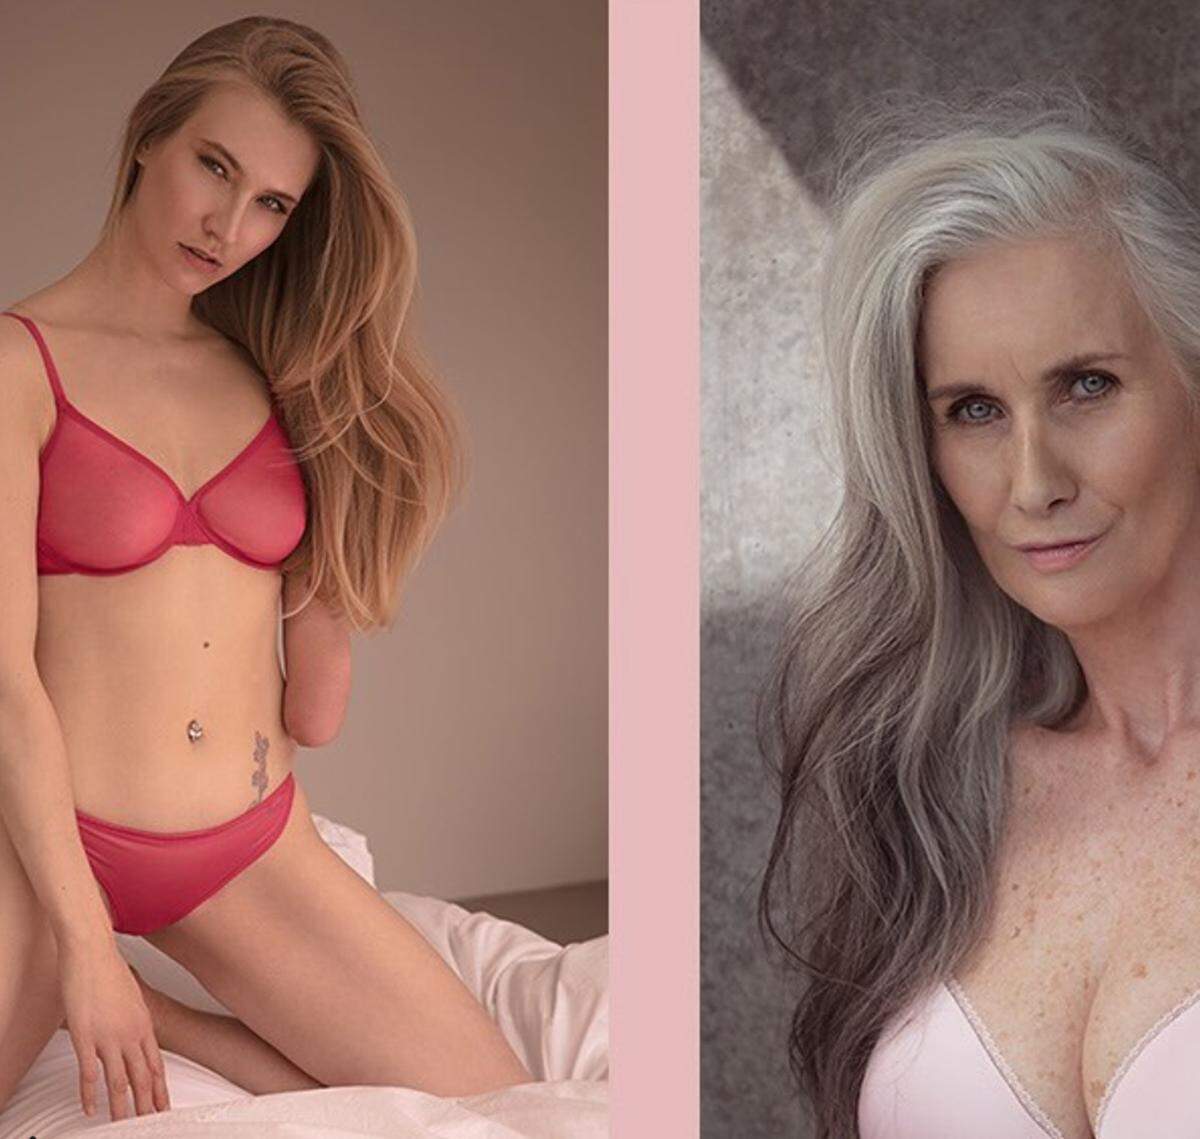 Ob Golden Ager wie die 59-jährige Nicky Griffin oder Kelly Knox, die ohne linken Unterarm geboren wurde. Insgesamt 12 Models zeigen, wie "echte" Frauen in Unterwäsche aussehen.